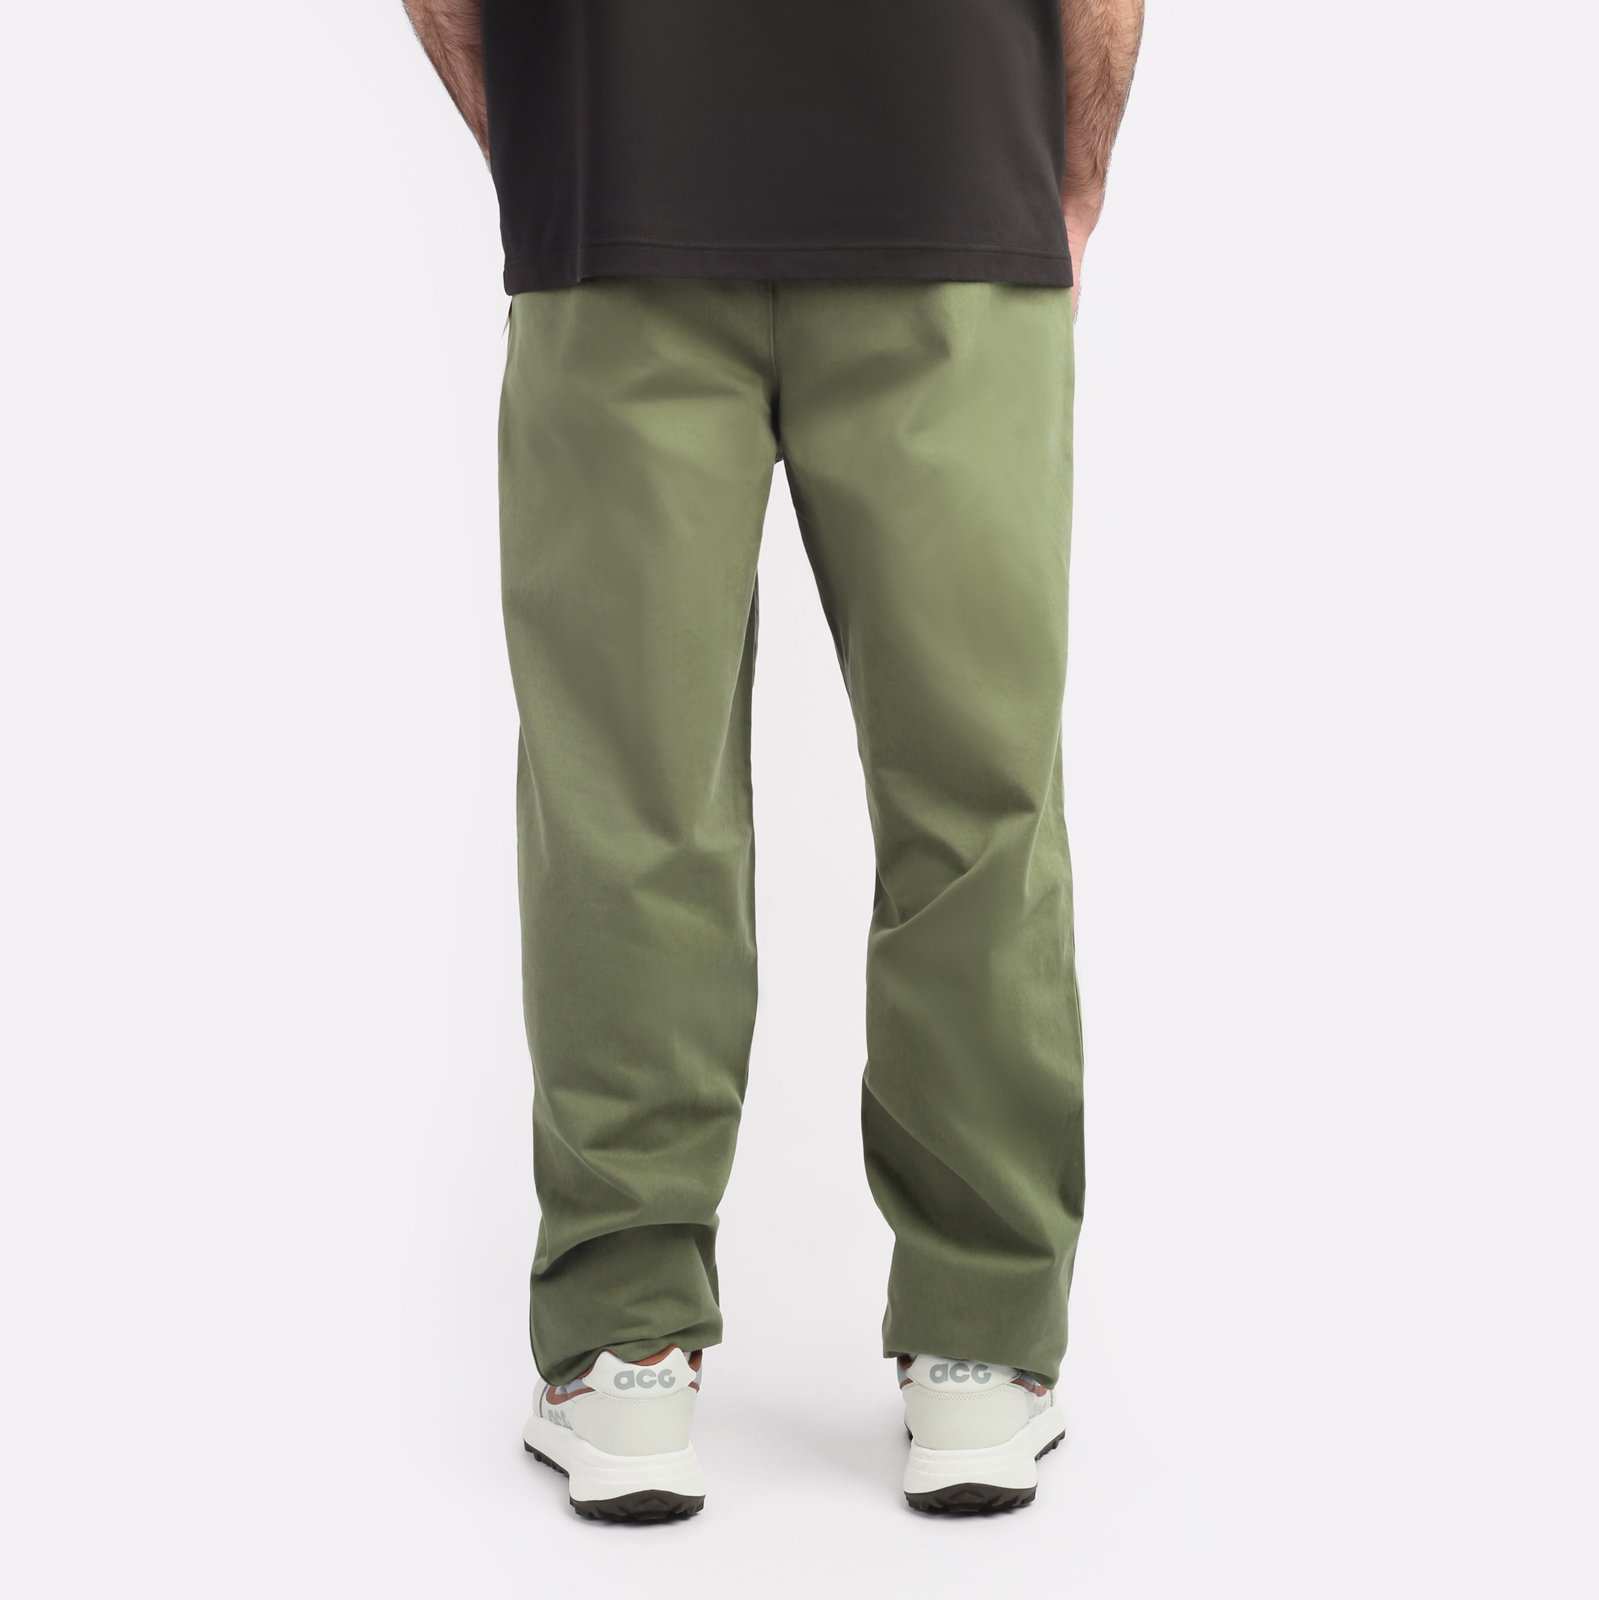 мужские брюки Alpha Industries Classic Trousers  (MBC53500CO-green)  - цена, описание, фото 2